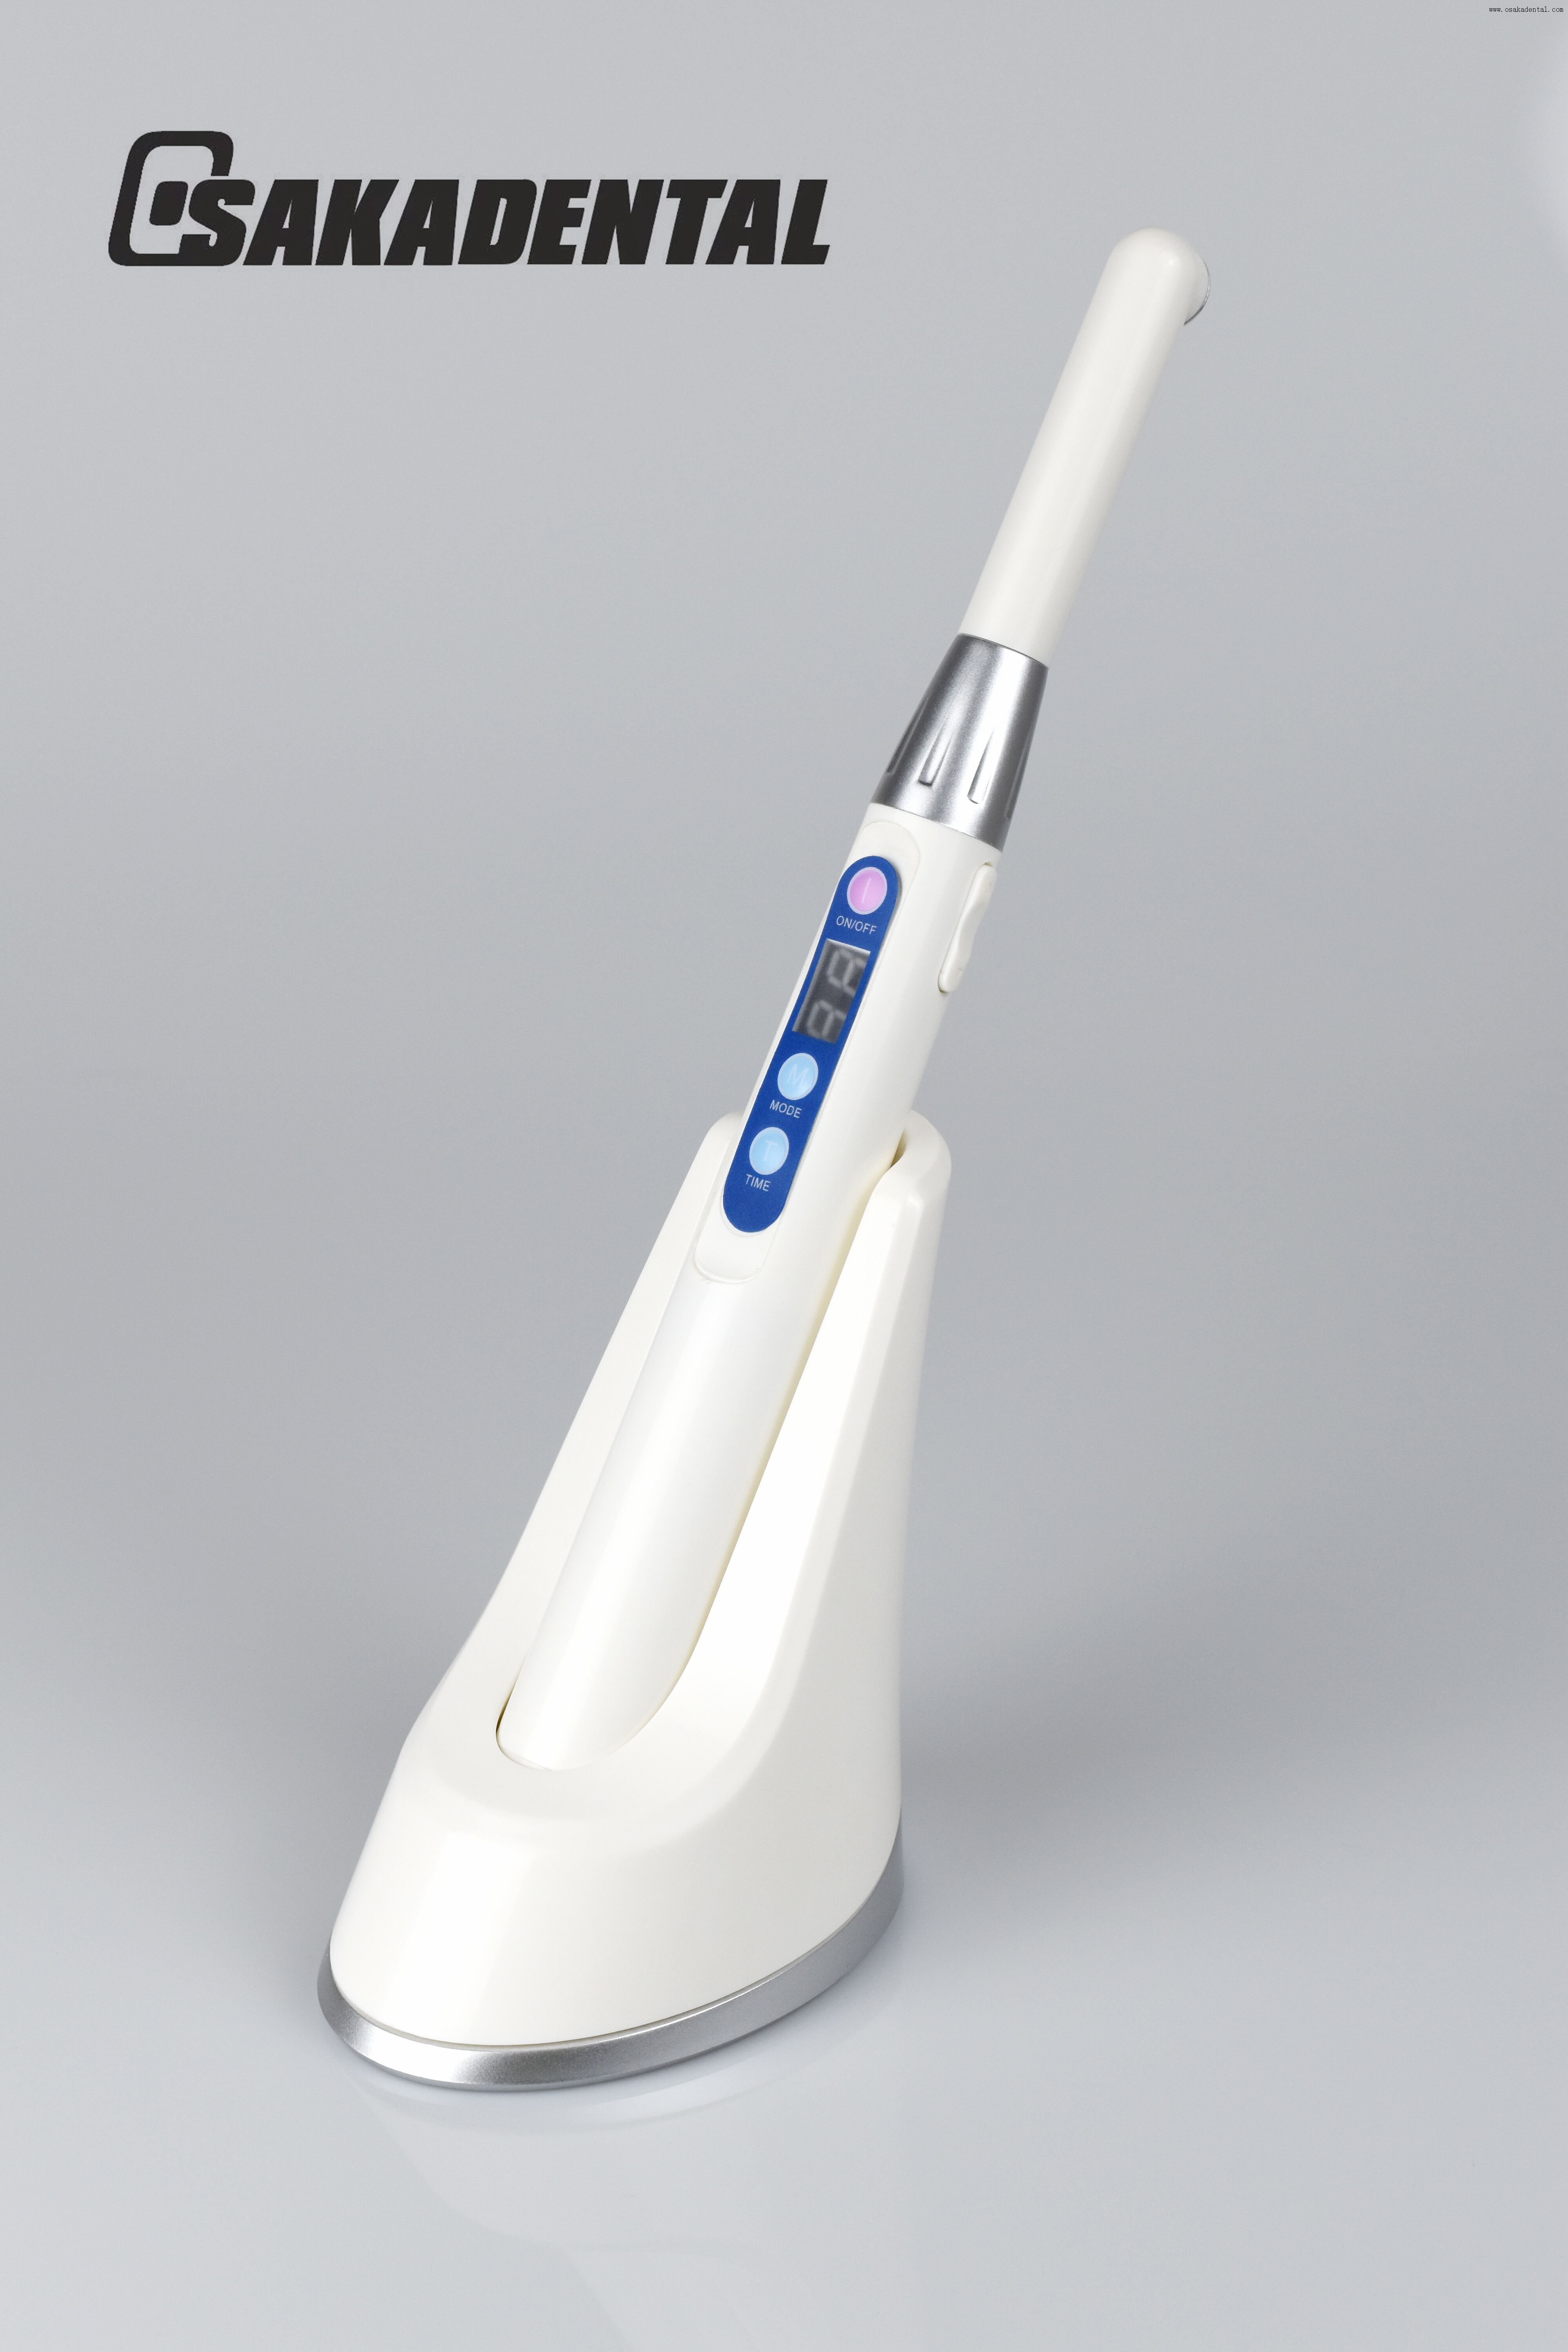 Una segunda lámpara de polimerización dental de 2700 mw/cm para unidad dental